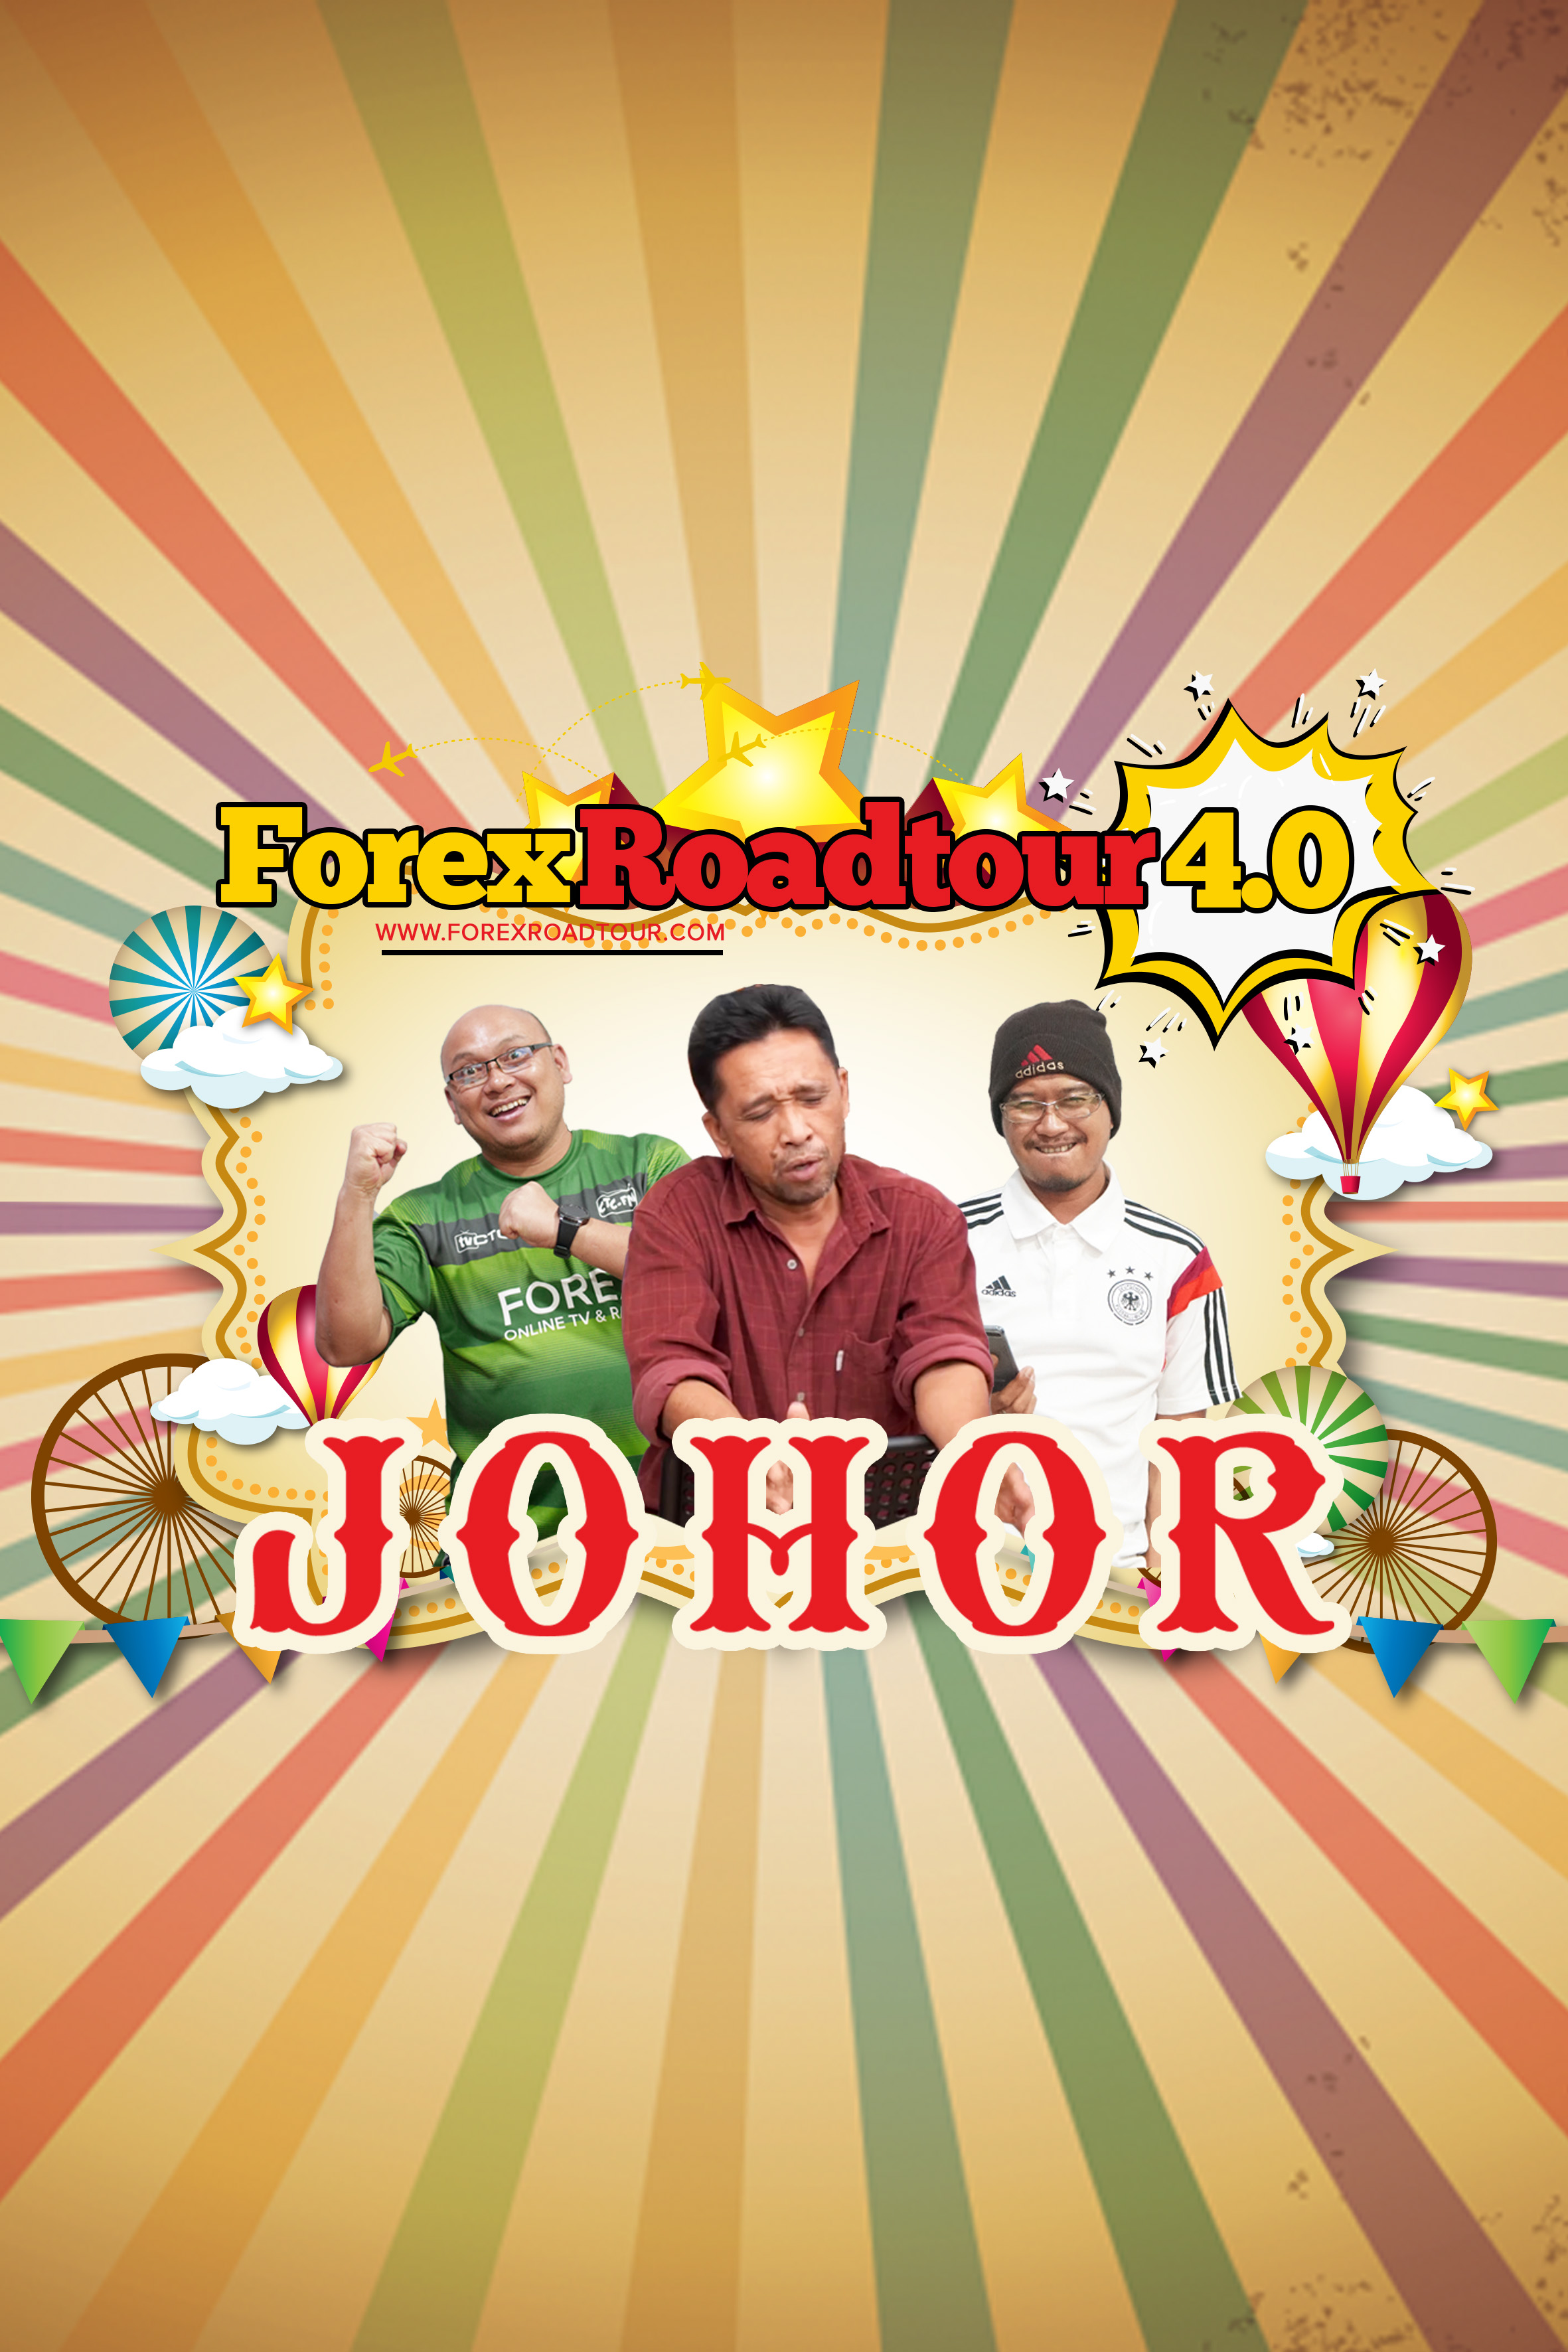 Forex Roadtour 4.0 - Johor